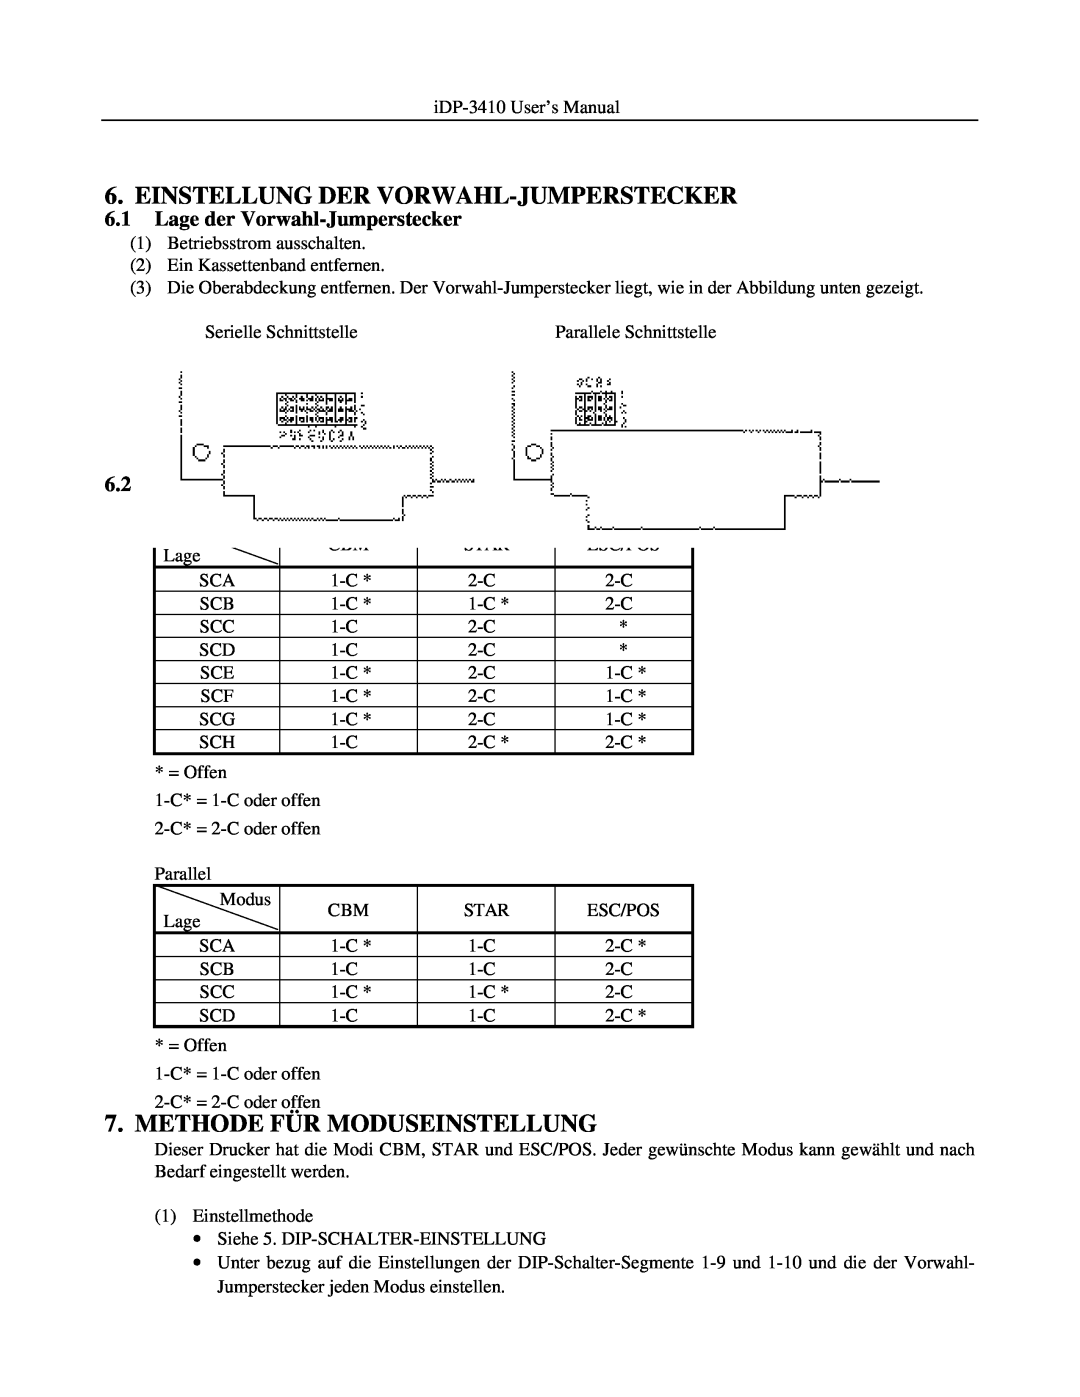 Addlogix iDP-3410 Einstellung Der Vorwahl-Jumperstecker, Methode Für Moduseinstellung, Lage der Vorwahl-Jumperstecker 